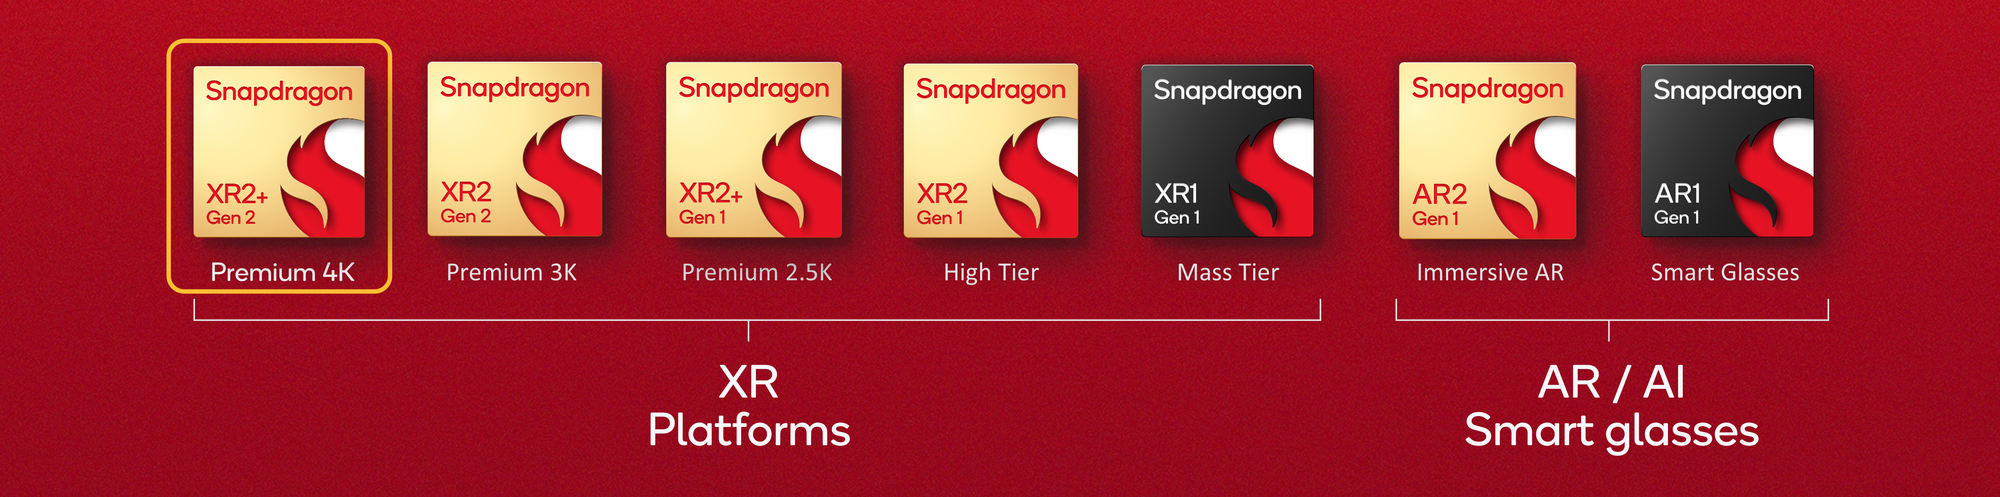 Snapdragon XR2+ Gen 2 für Samsung Headset und mehr angekündigt